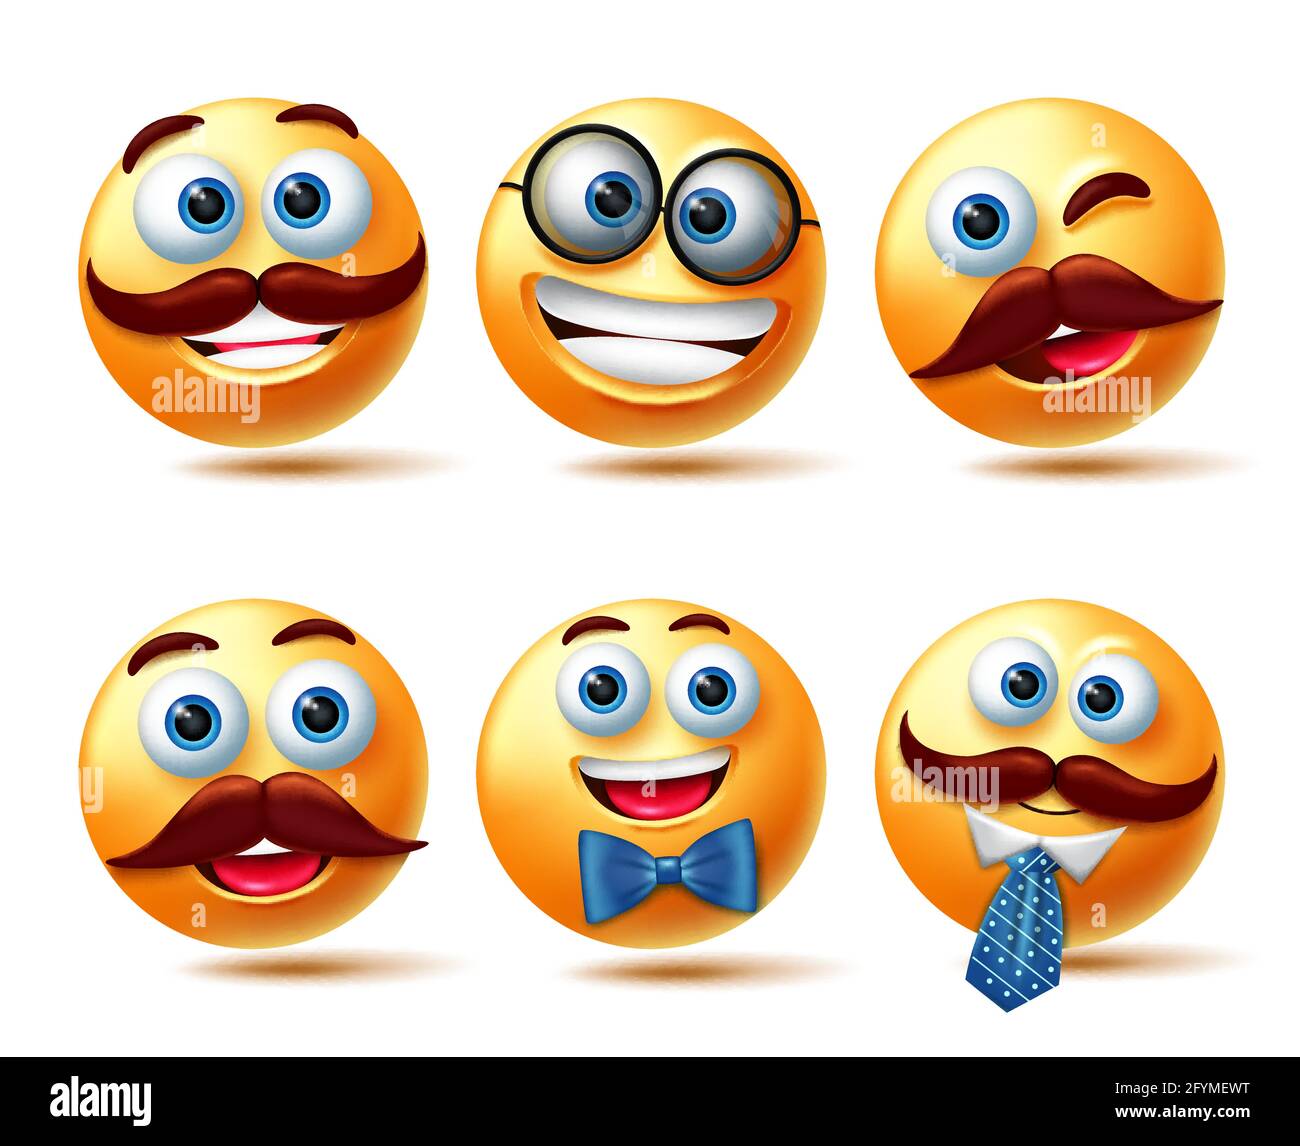 Set di vettori emoticon Smileys. Emoticon personaggi smiley 3d in Happy, smirk, teary eyed e confondere espressione per la collezione di personaggi emoticon. Illustrazione Vettoriale